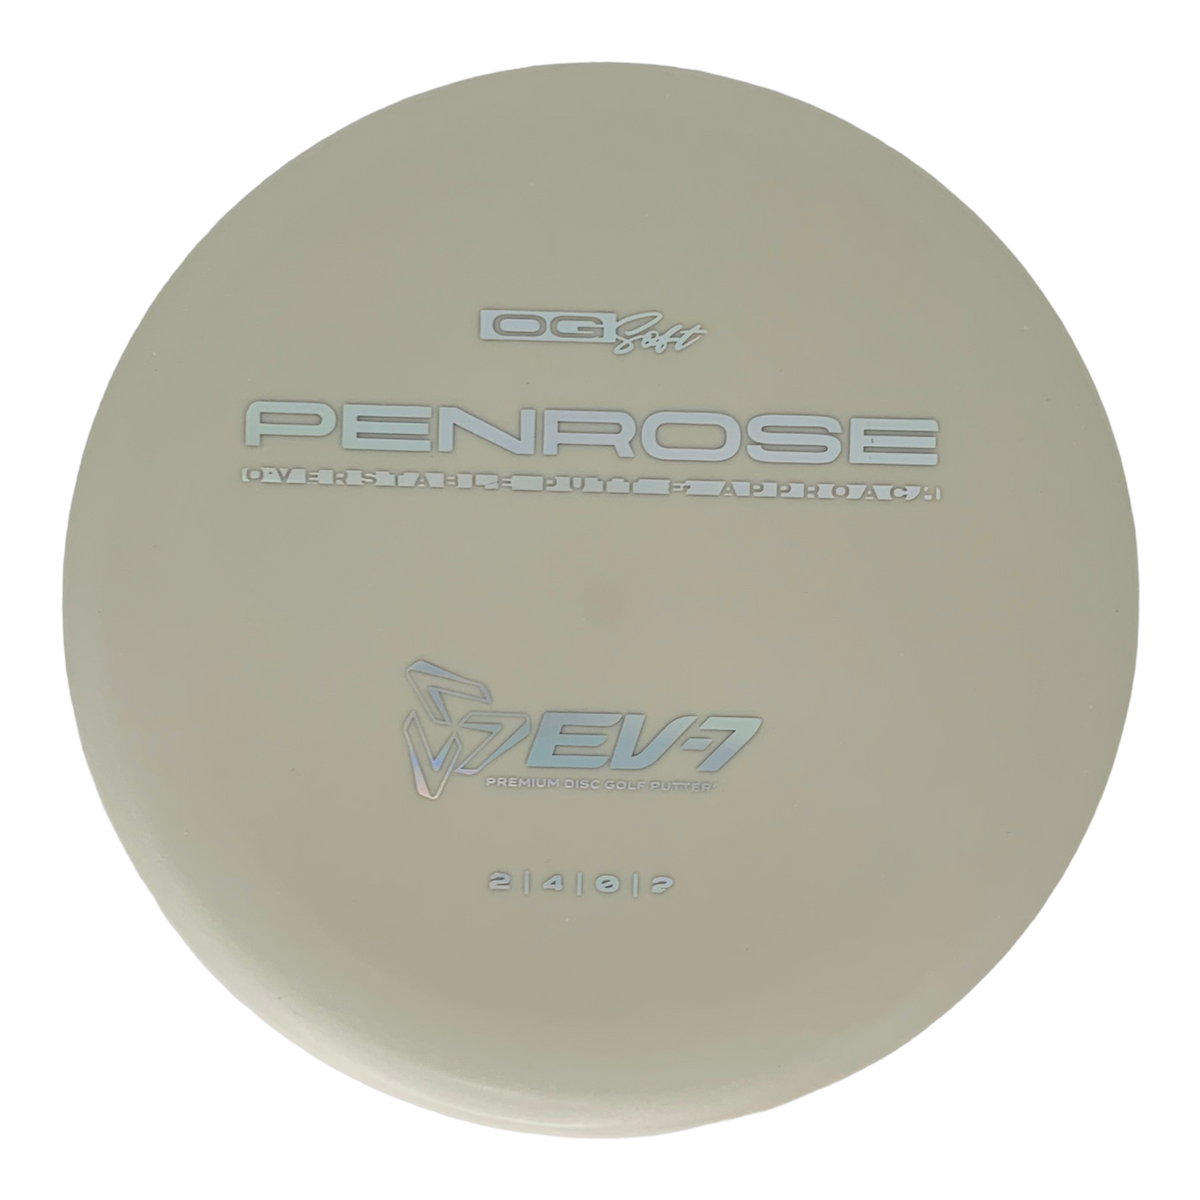 EV-7 Penrose - OG Soft